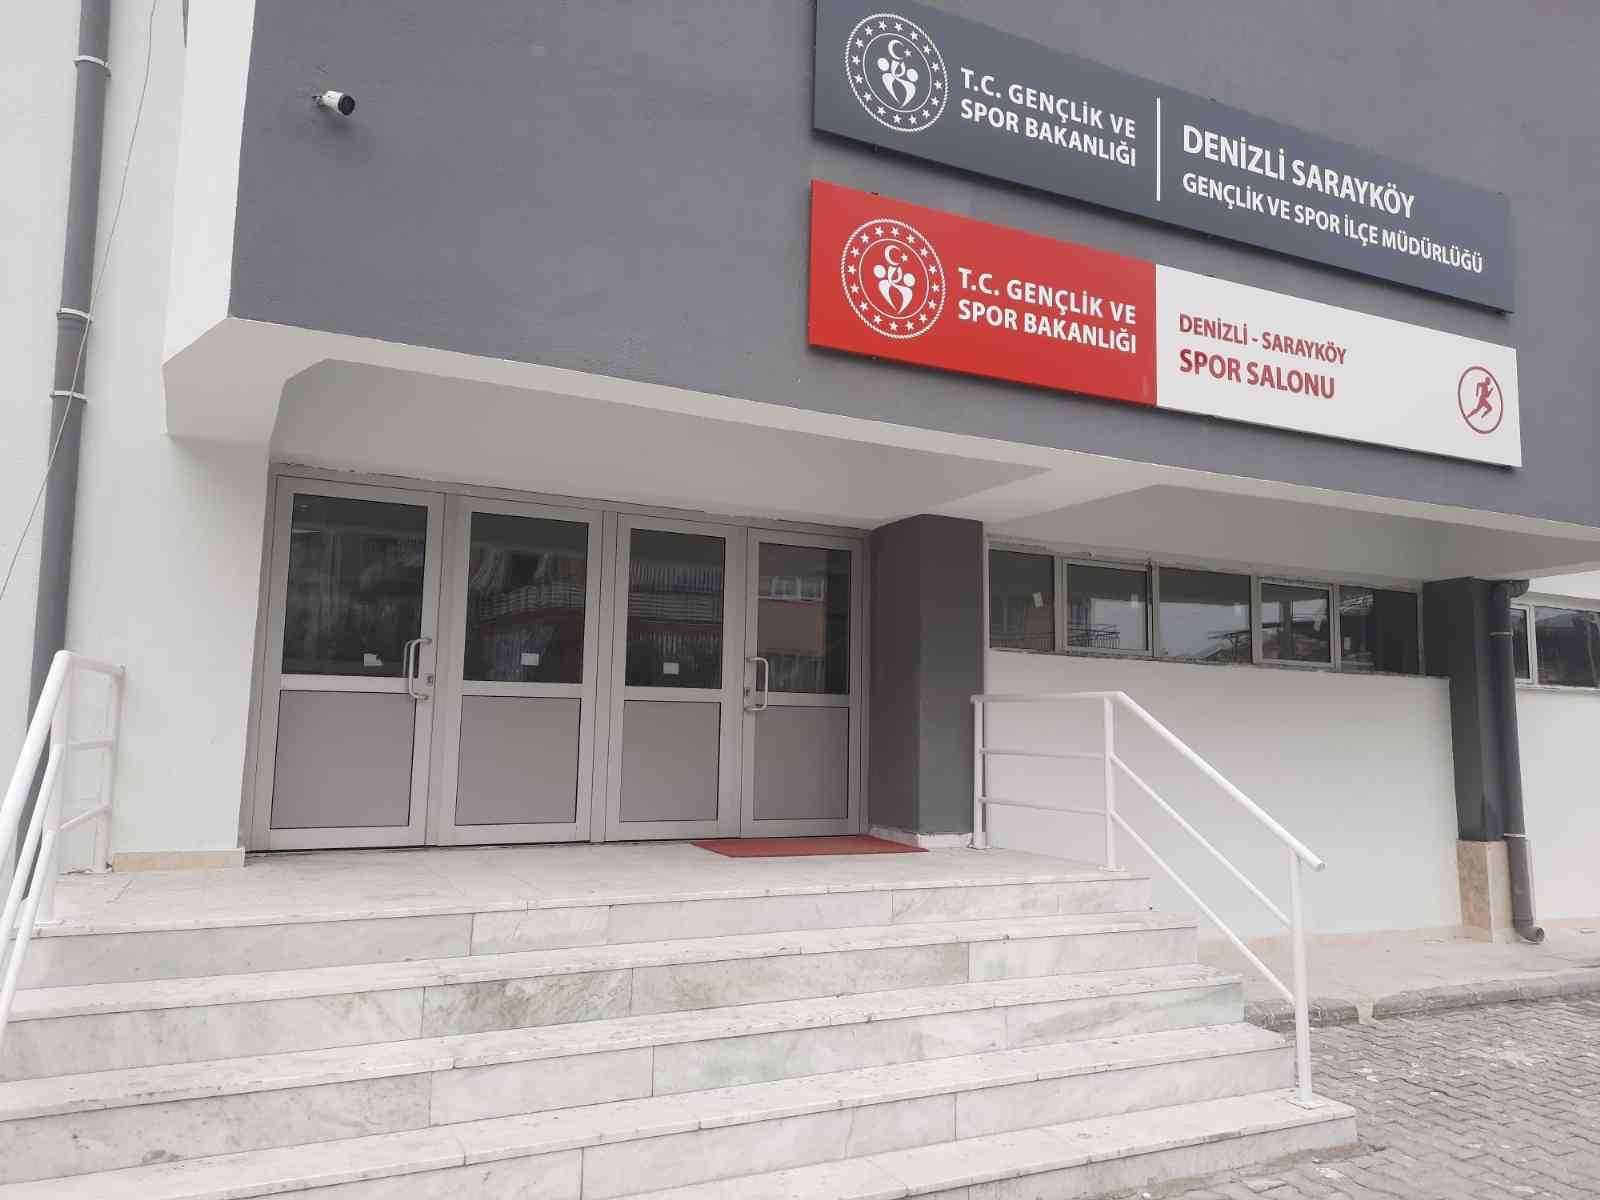 Sarayköy Spor Salonu baştan aşağıya yenilendi #denizli